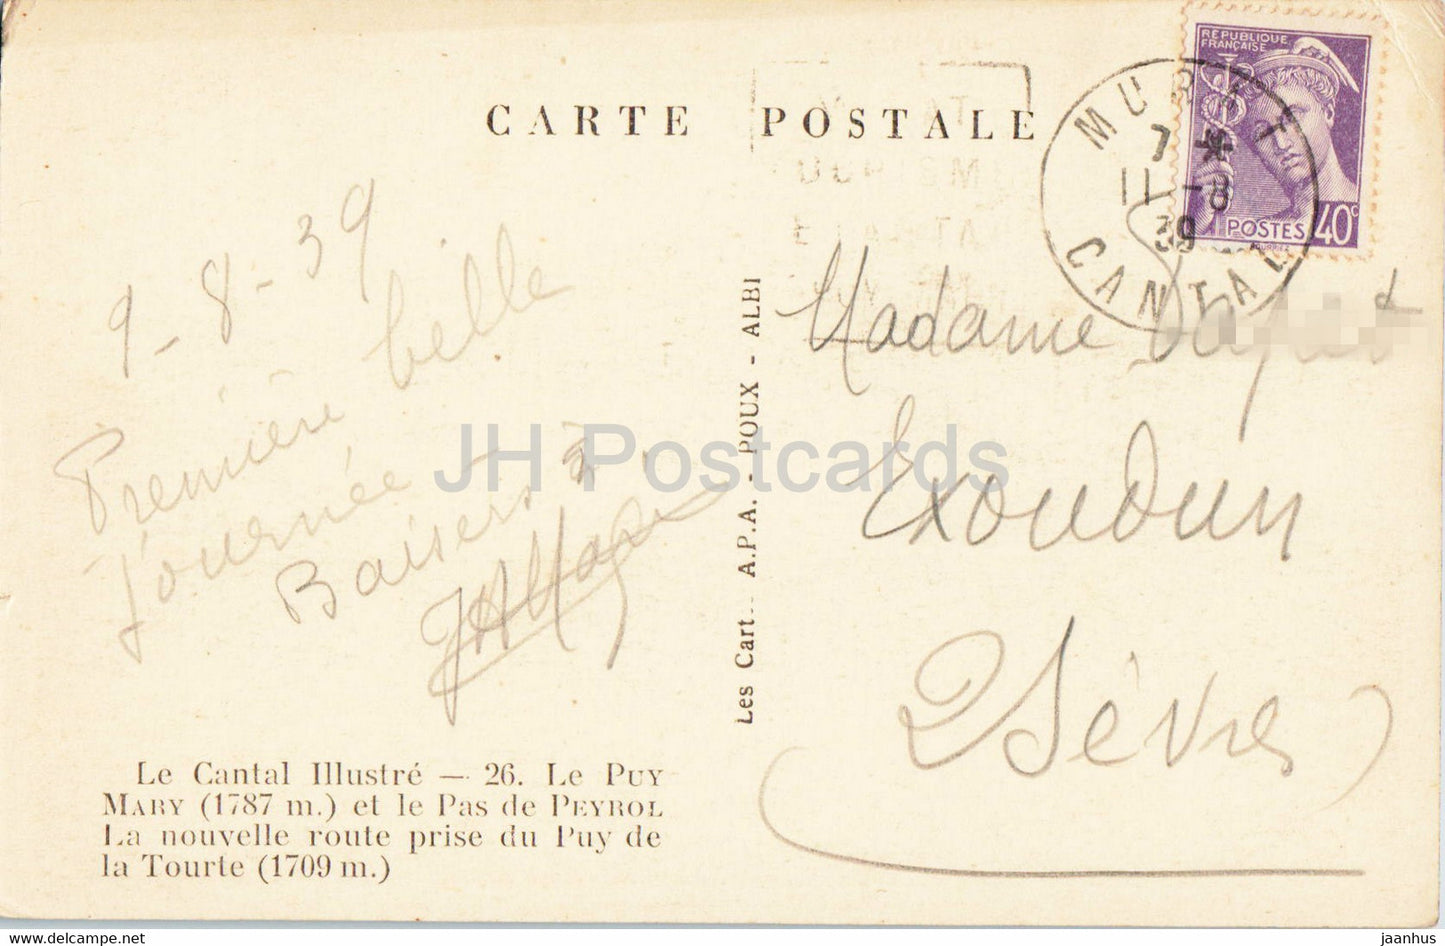 Le Cantal Illustre - Le Puy Mary et le Pas de Peyrol - carte postale ancienne - 1939 - France - occasion